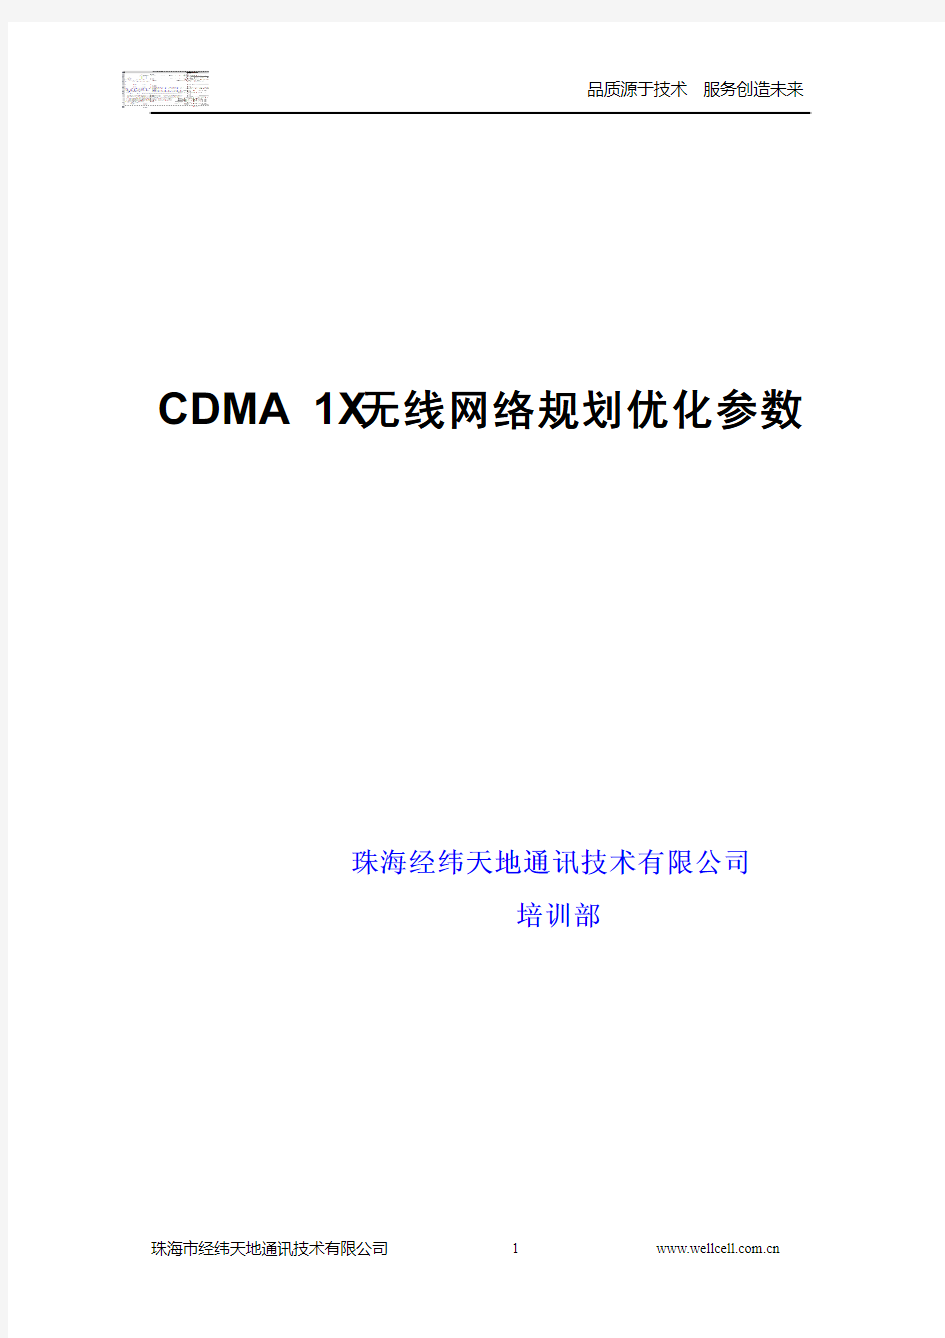 CDMA+1X无线网络规划优化参数(华为)